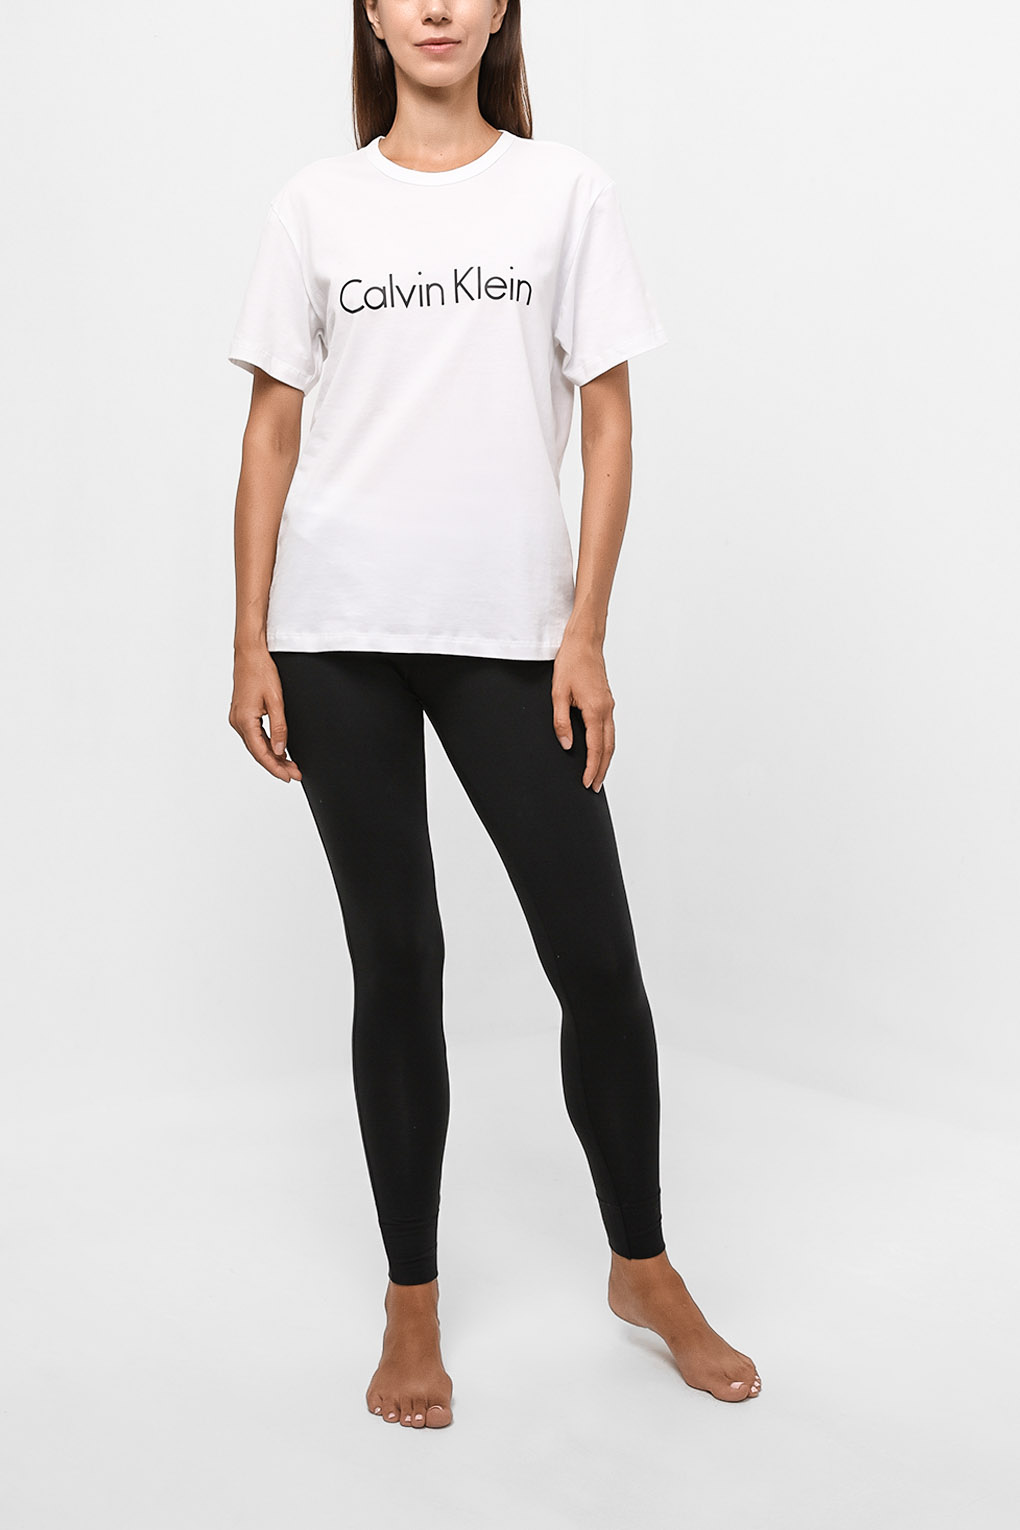 Леггинсы домашние женские Calvin Klein 0000D1632E черные L